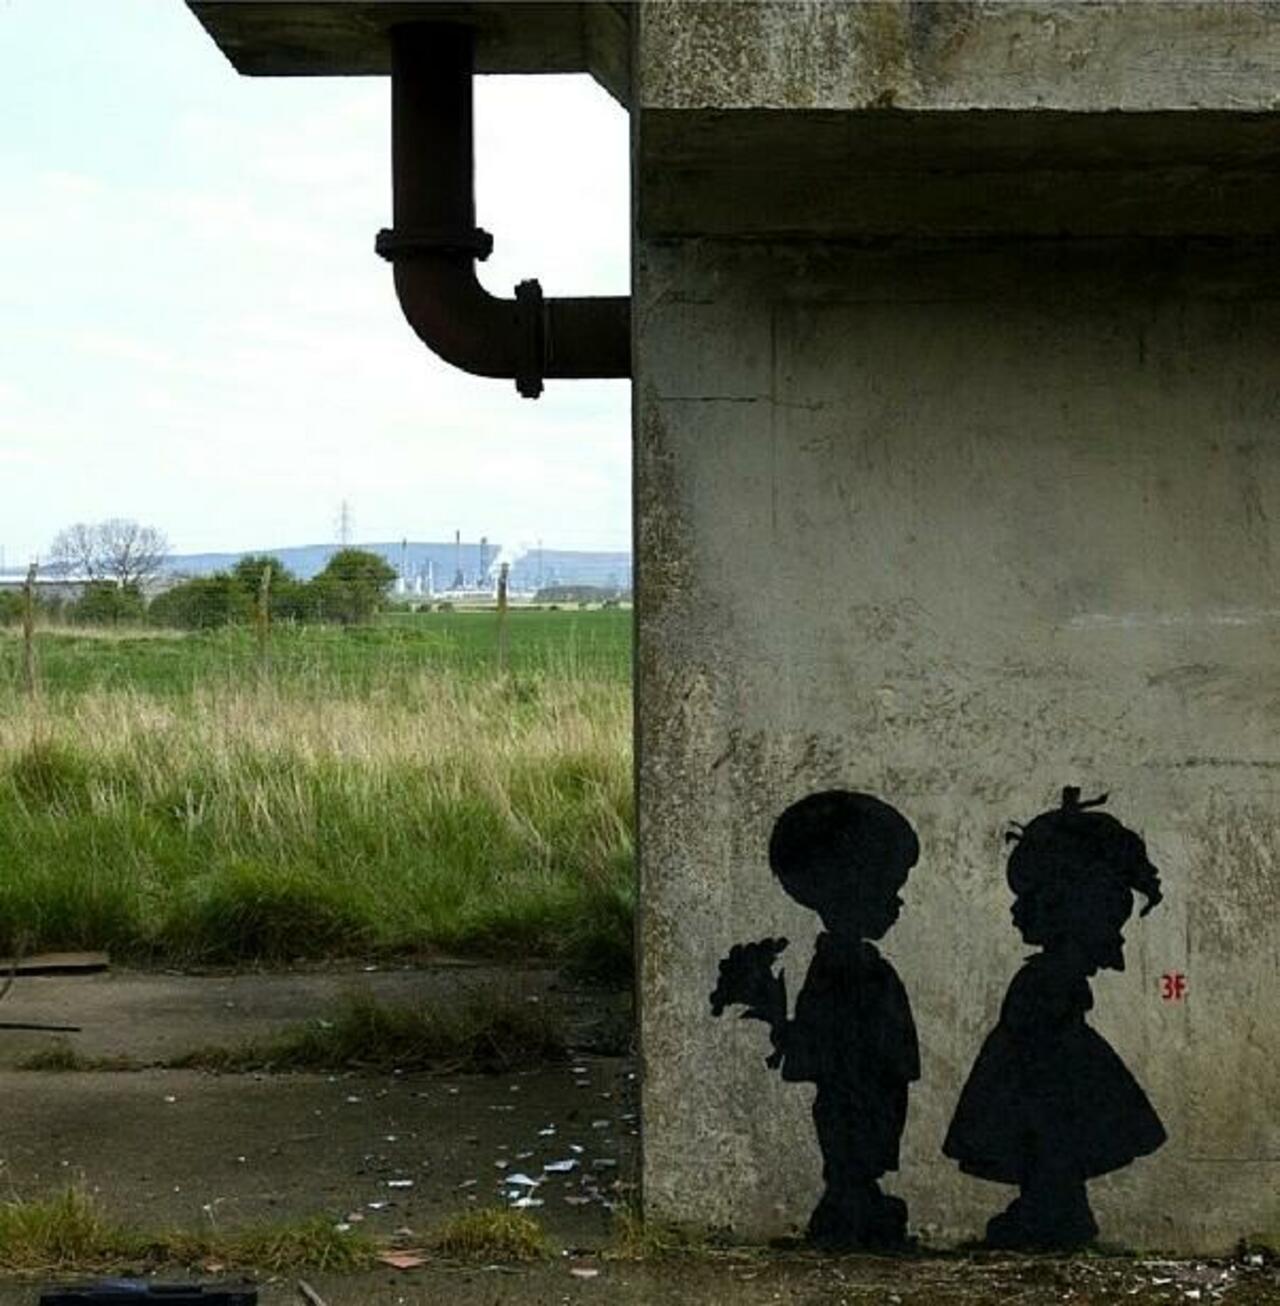 Found love in a hopeless place!

Street Art by 3fountains 

#art #mural #graffiti #streetart https://t.co/1iDnGqG70G RT @GoogleStreetArt